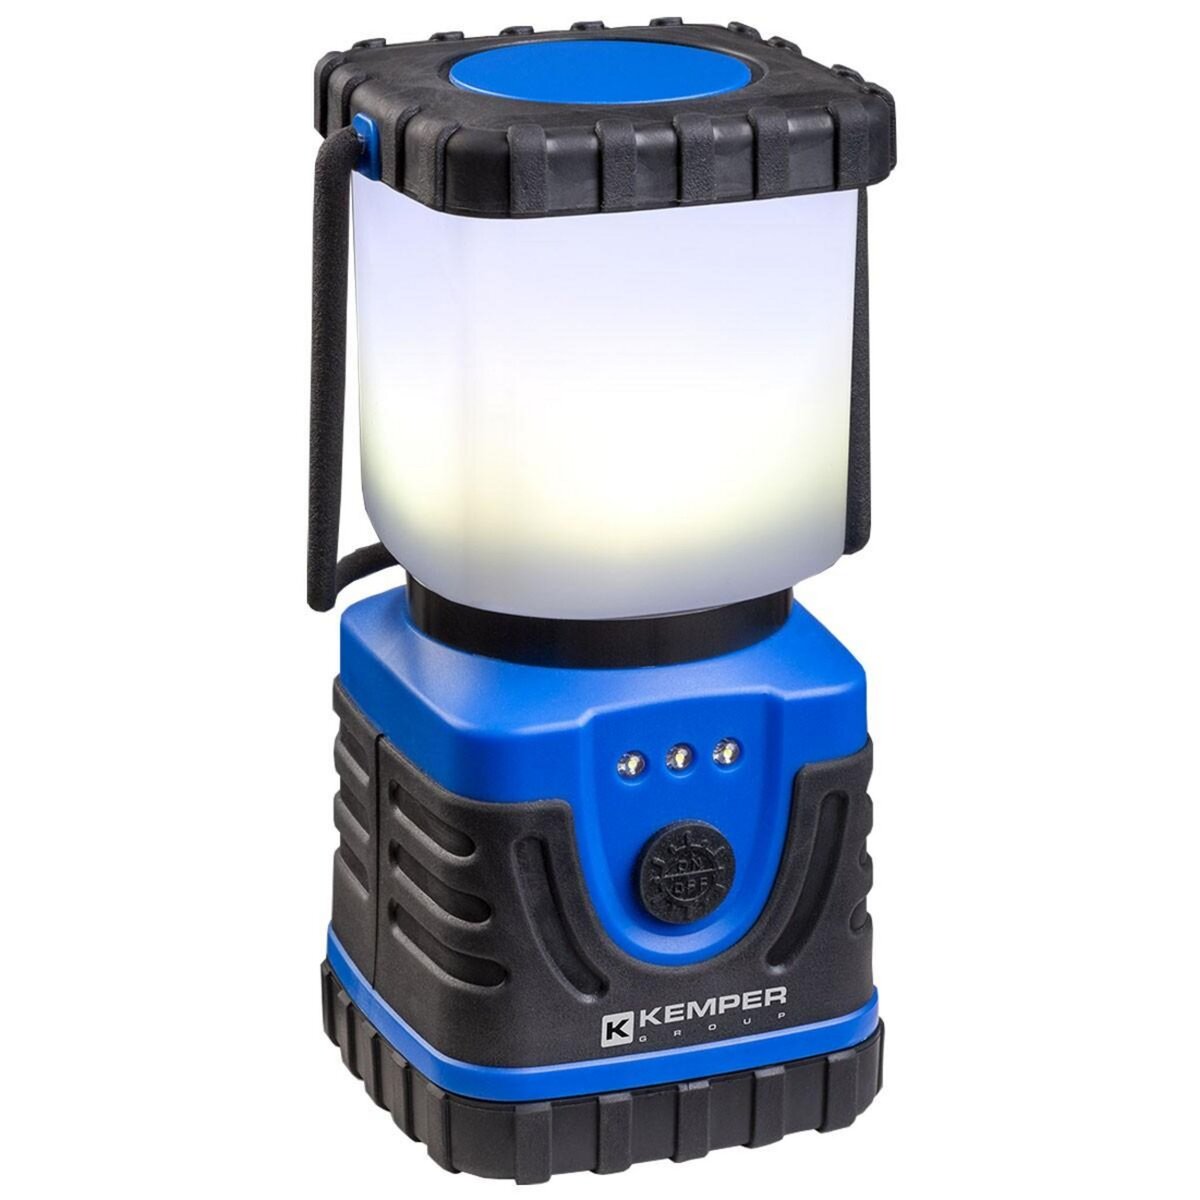 Kemper Lampe torche LED KEMPER à piles Autonomie 4H Faisceau 80m 30 Lumens IP54 Camping Pêche Maison